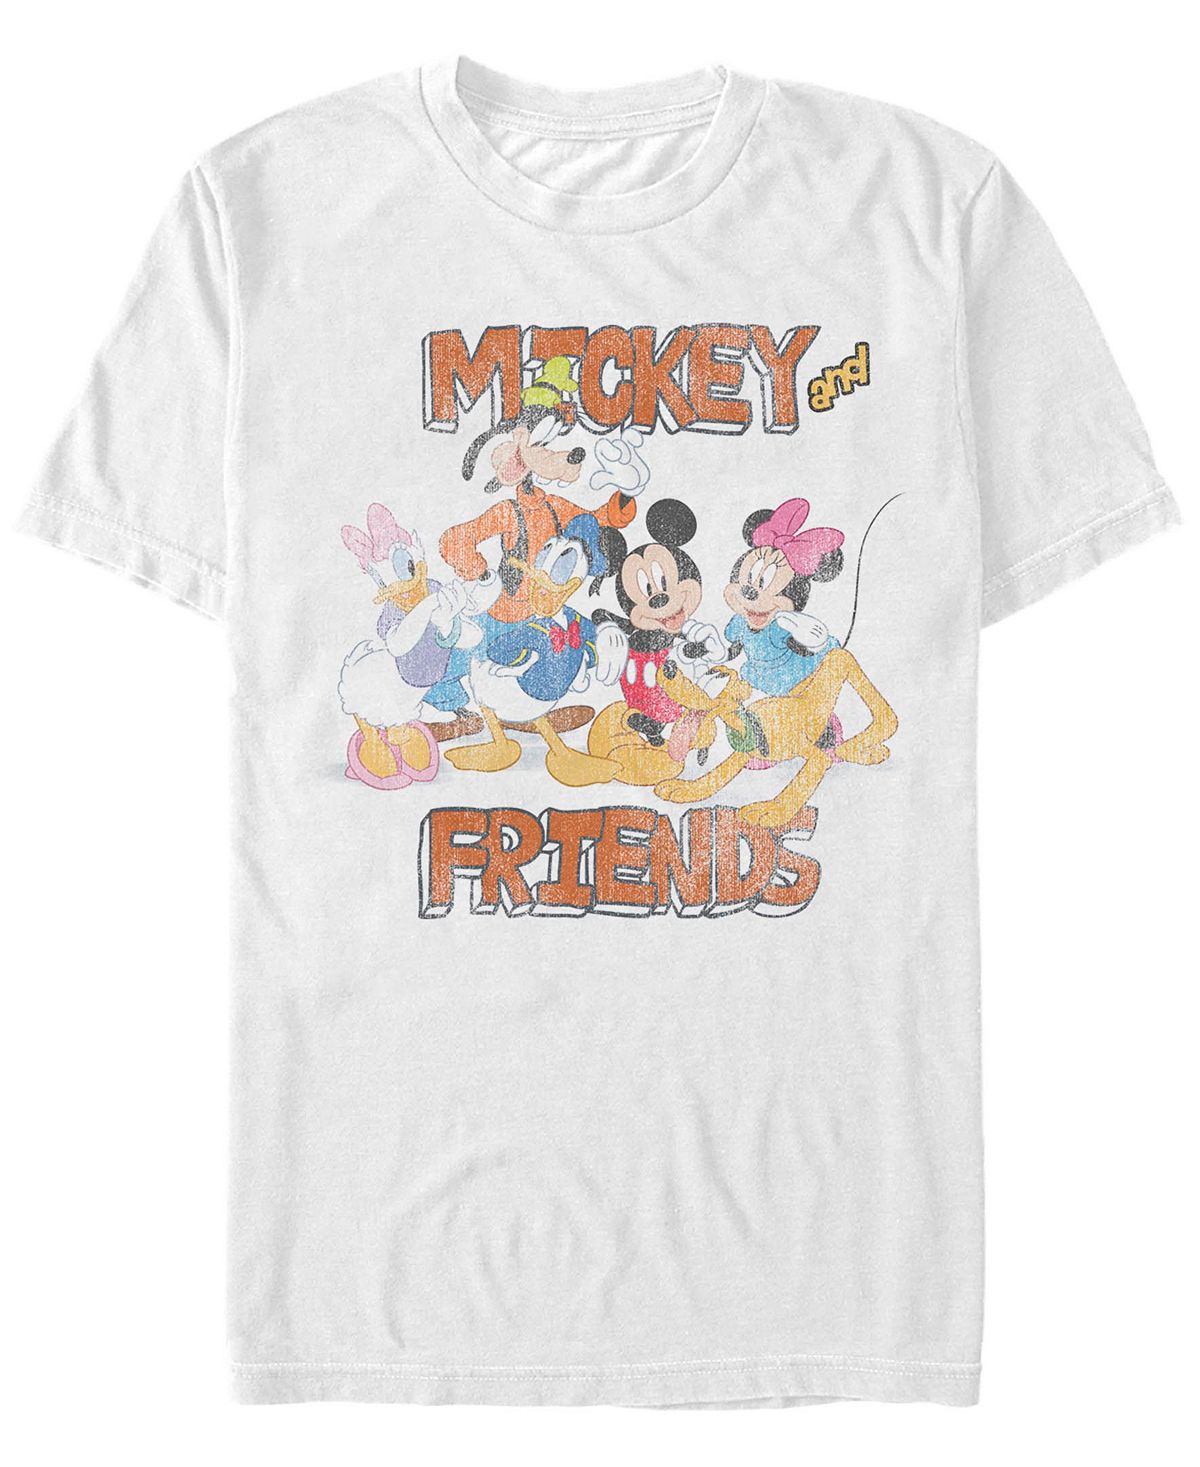 Мужская футболка с короткими рукавами mickey classic mickey and friends Fifth Sun, белый